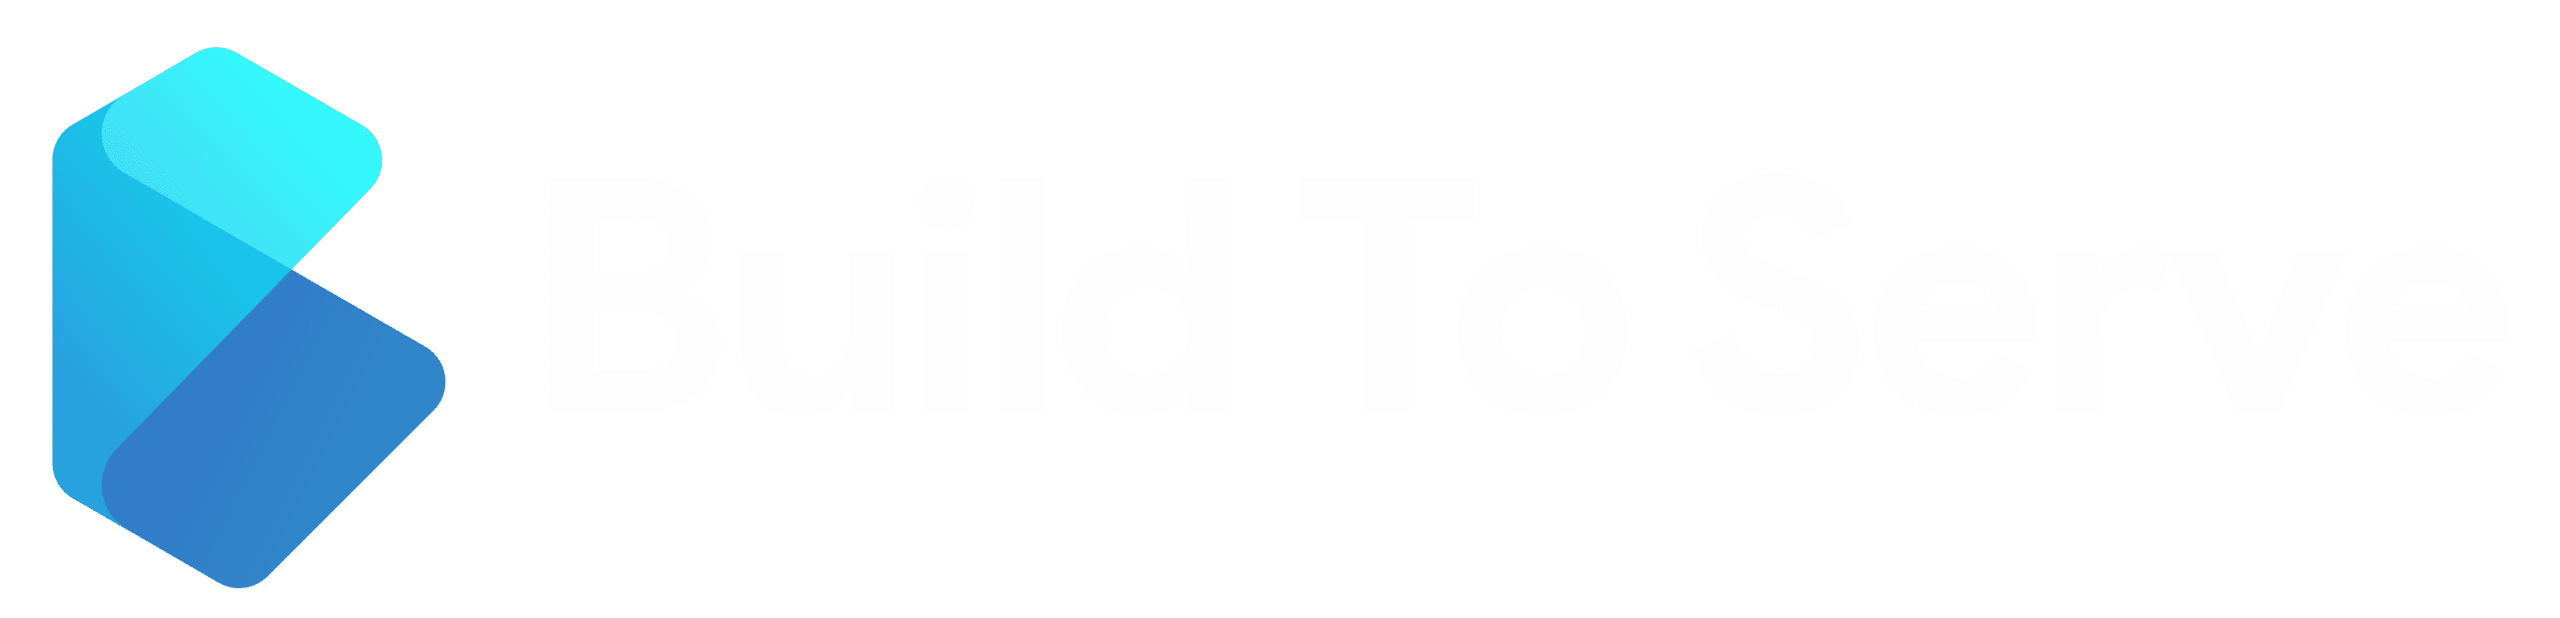 Build To Serve Logo